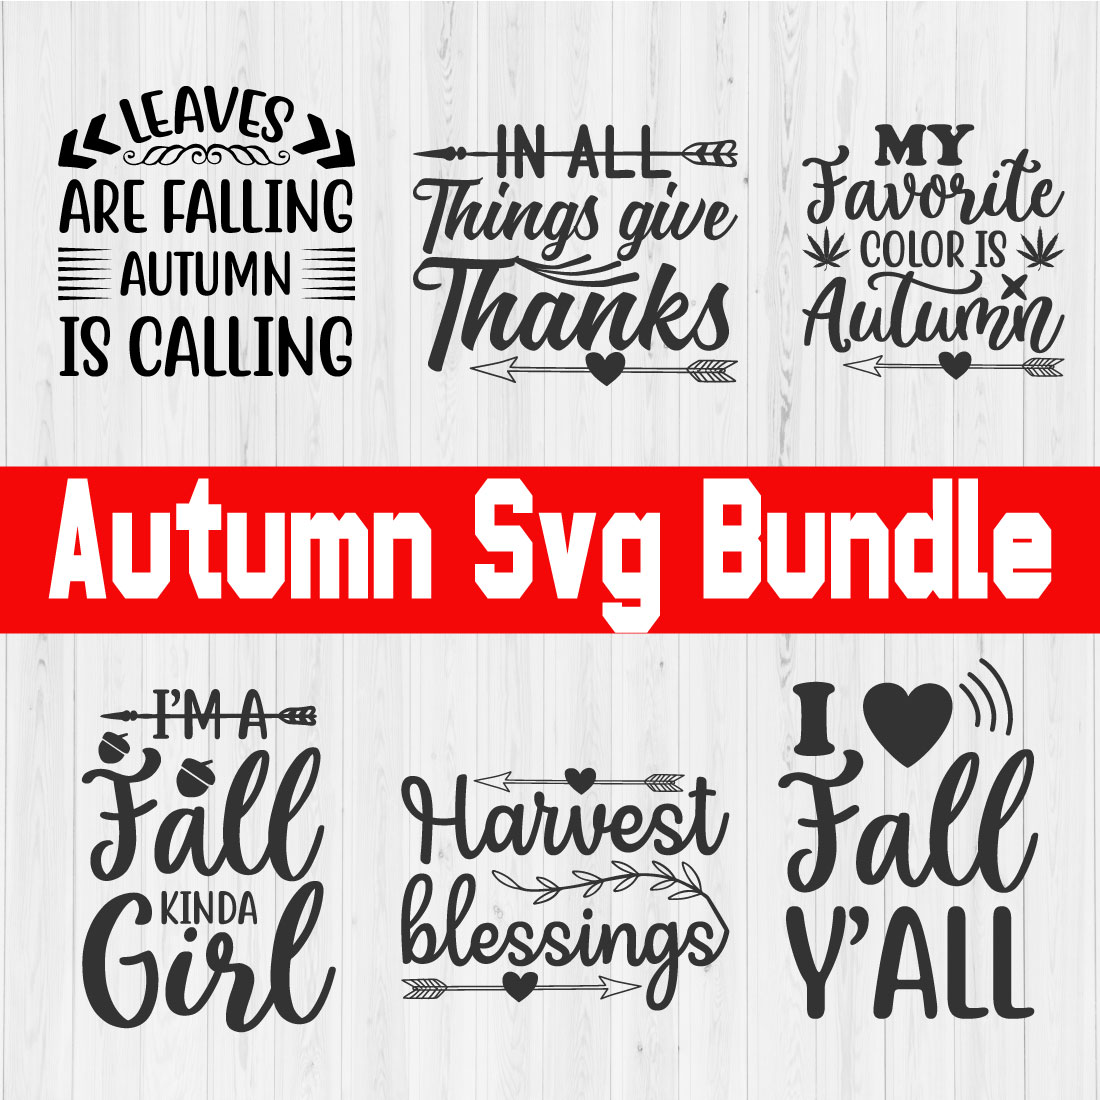 Autumn Svg Bundle Vol1 cover image.